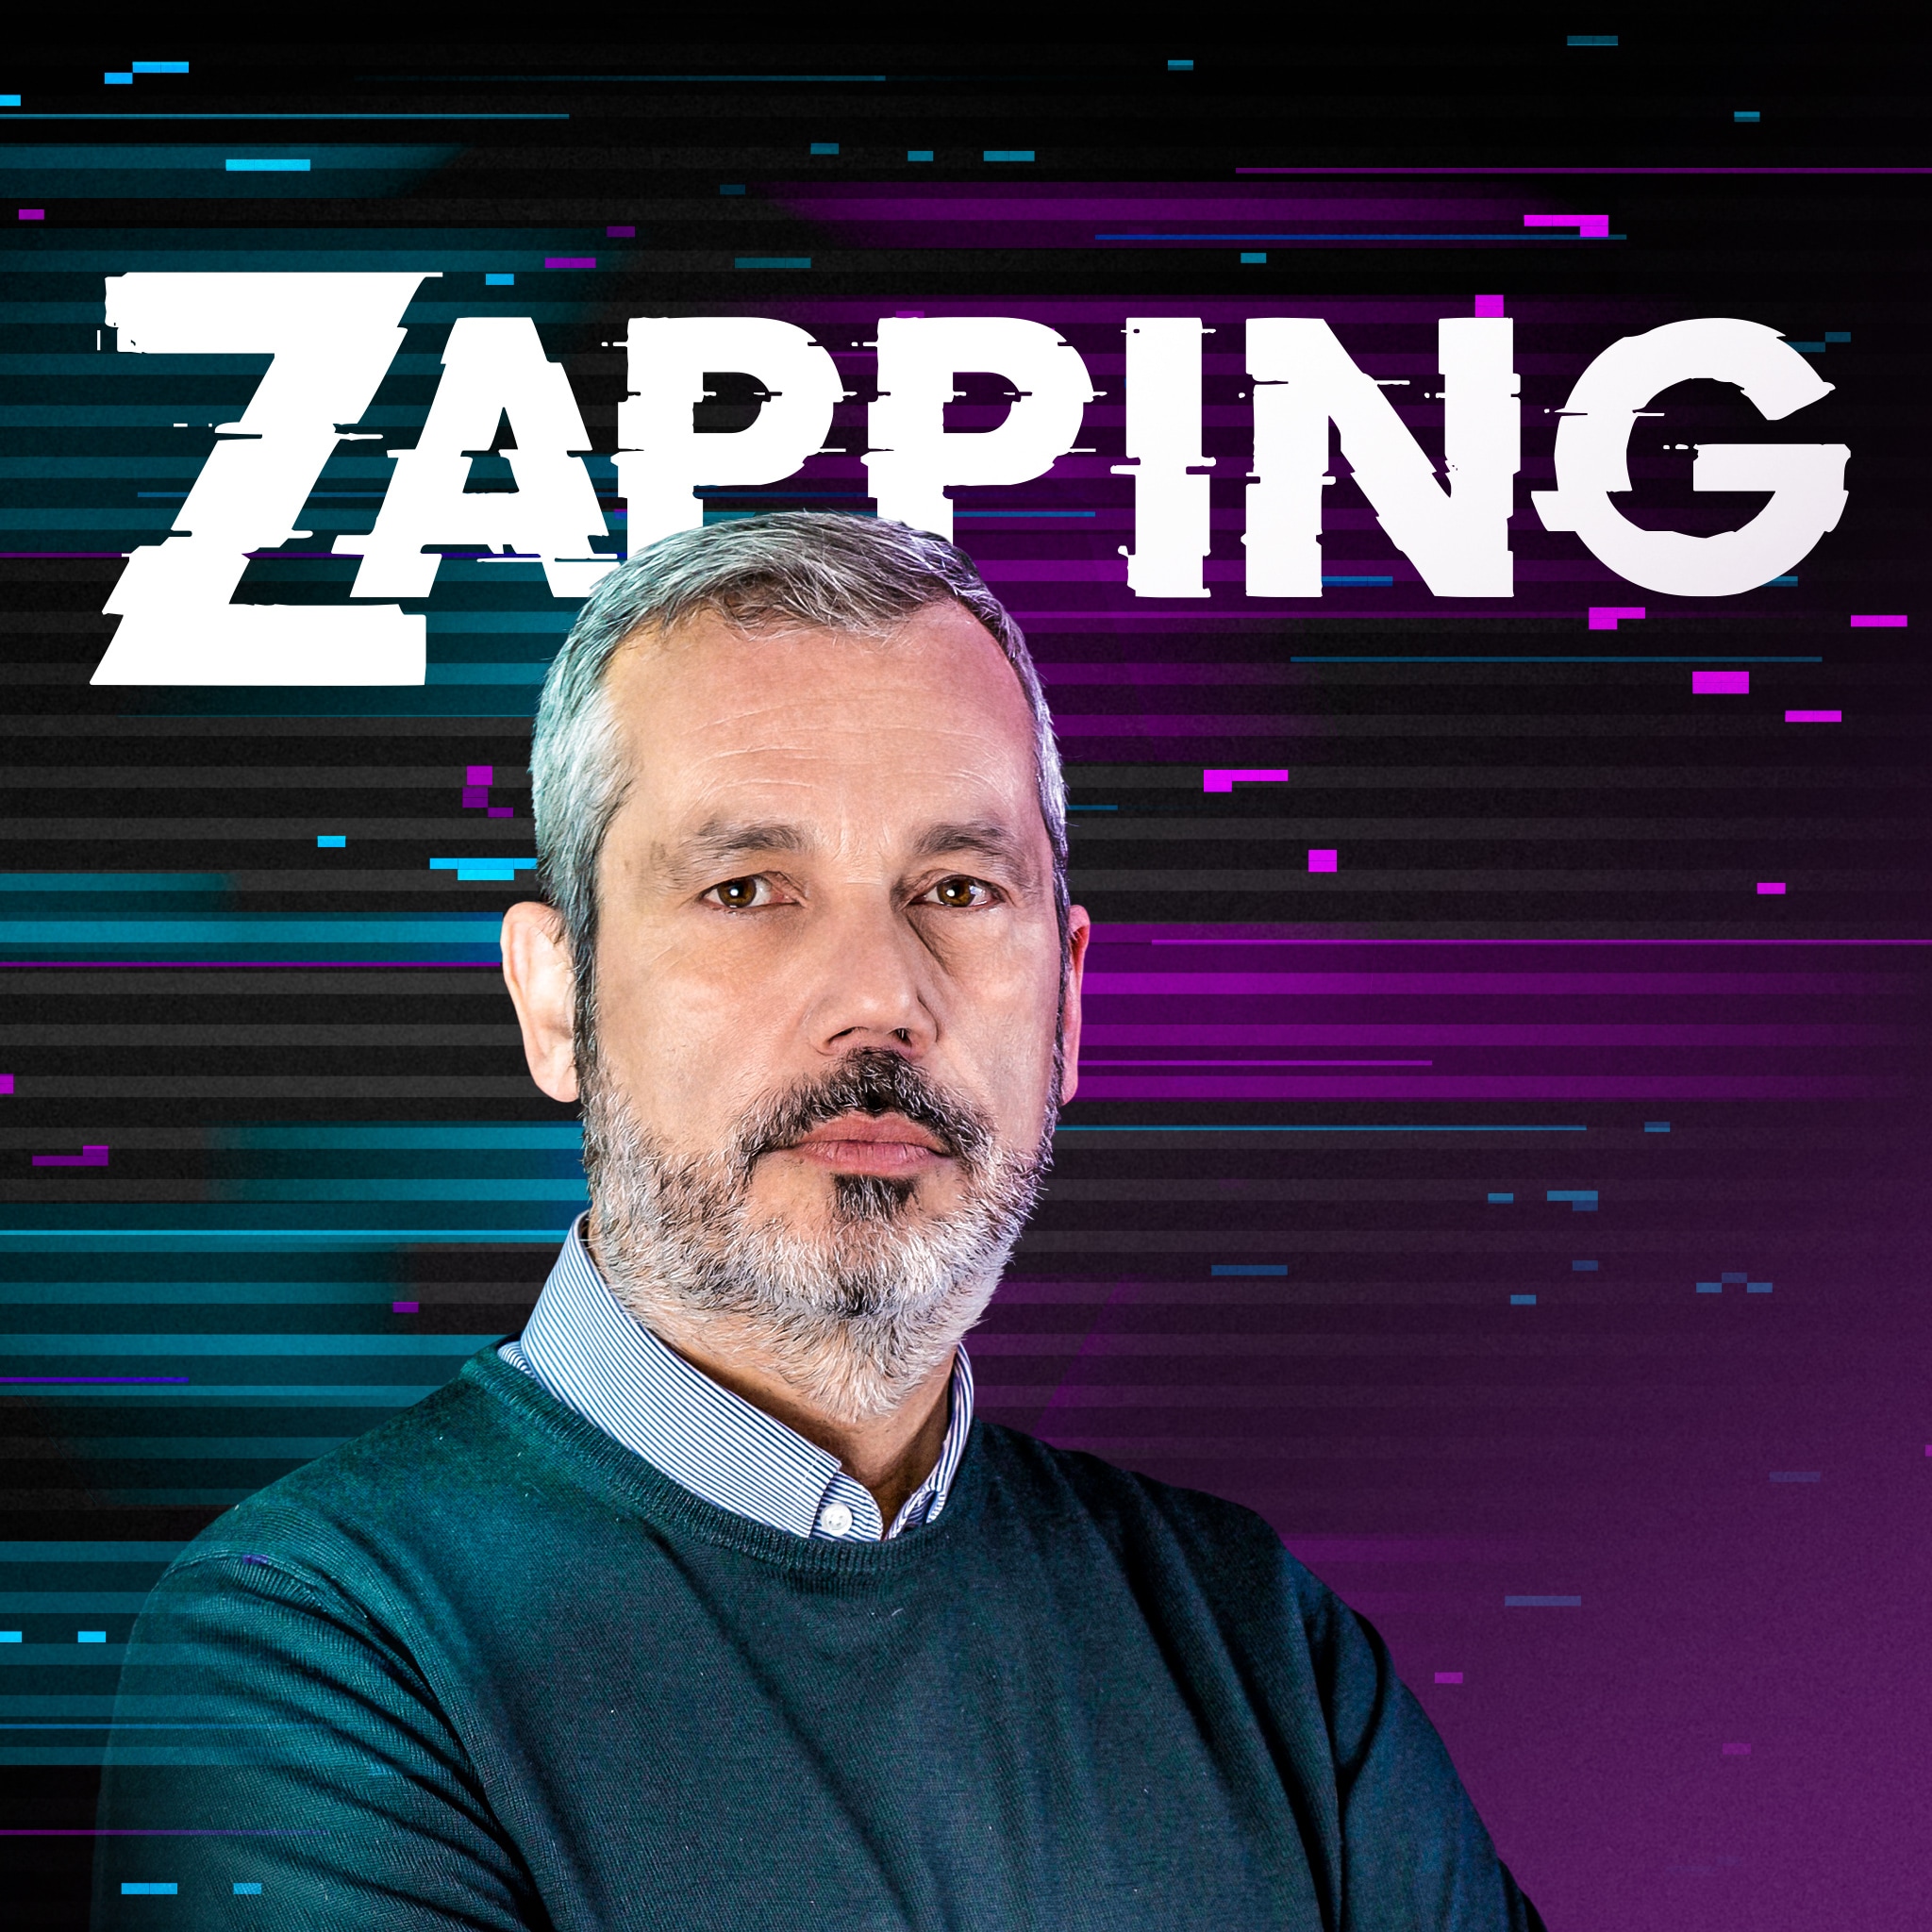 Rai Radio 1 Zapping